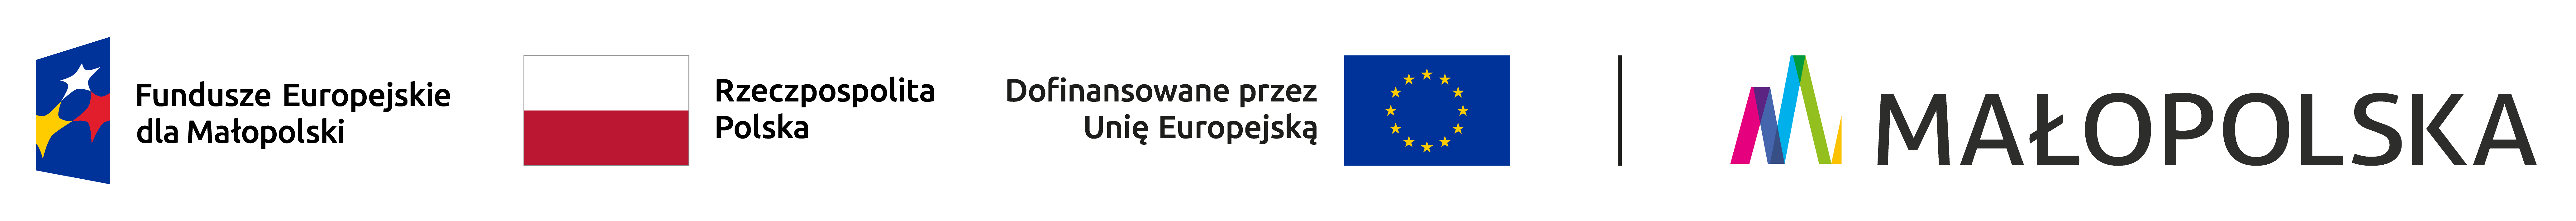 Zestawienie logotypów zawierające od lewej znak Funduszy Europejskich z podpisem Fundusze Europejskie dla Małopolski (granatowy trapez, w jego środku trzy pięcioramienne gwiazdy: biała, czerwona, żółta. Z prawej strony trapezu napis Fundusze Europejskie dla Małopolski), następnie flaga Rzeczypospolitej Polskiej (biało czerwony prostokąt, obok napis Rzeczypospolita Polska), następnie znak Unii Europejskiej złożony z napisu Dofinansowane przez Unię Europejską i flagi Unii Europejskiej (granatowy prostokąt, pośrodku okrąg złożony z 12 złotych gwiazd). Po pionowej linii rozdzielającej, oficjalne logo województwa małopolskiego (wielobarwna wstęga ułożona w kształt litery M, za nią napis dużymi literami MAŁOPOLSKA)